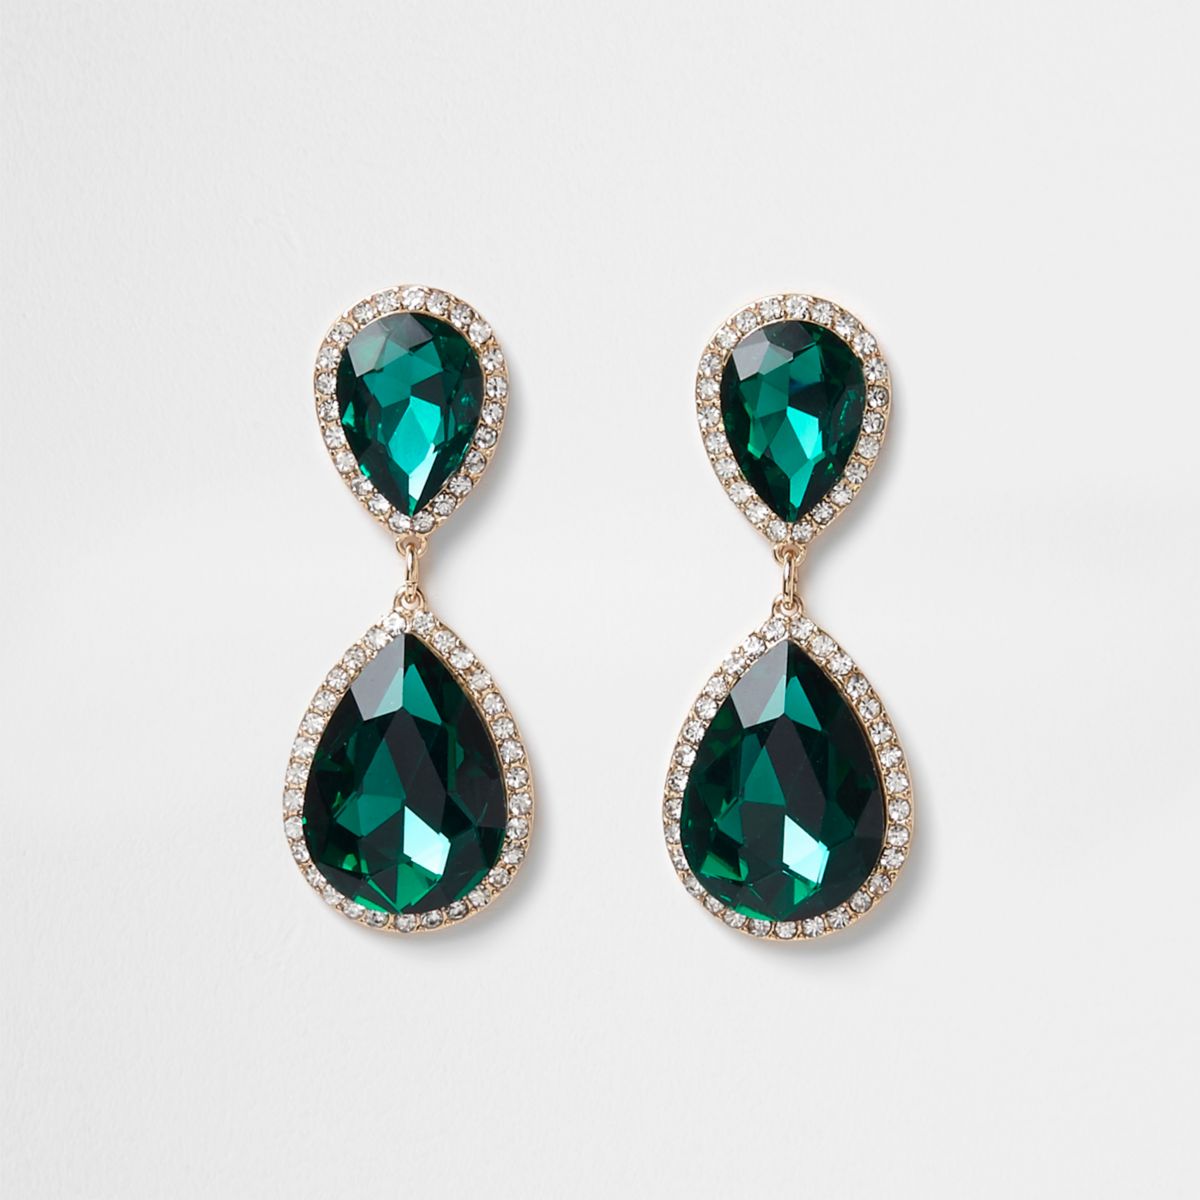 Emerald green pendant dangle earrings - Earrings - Jewellery - women